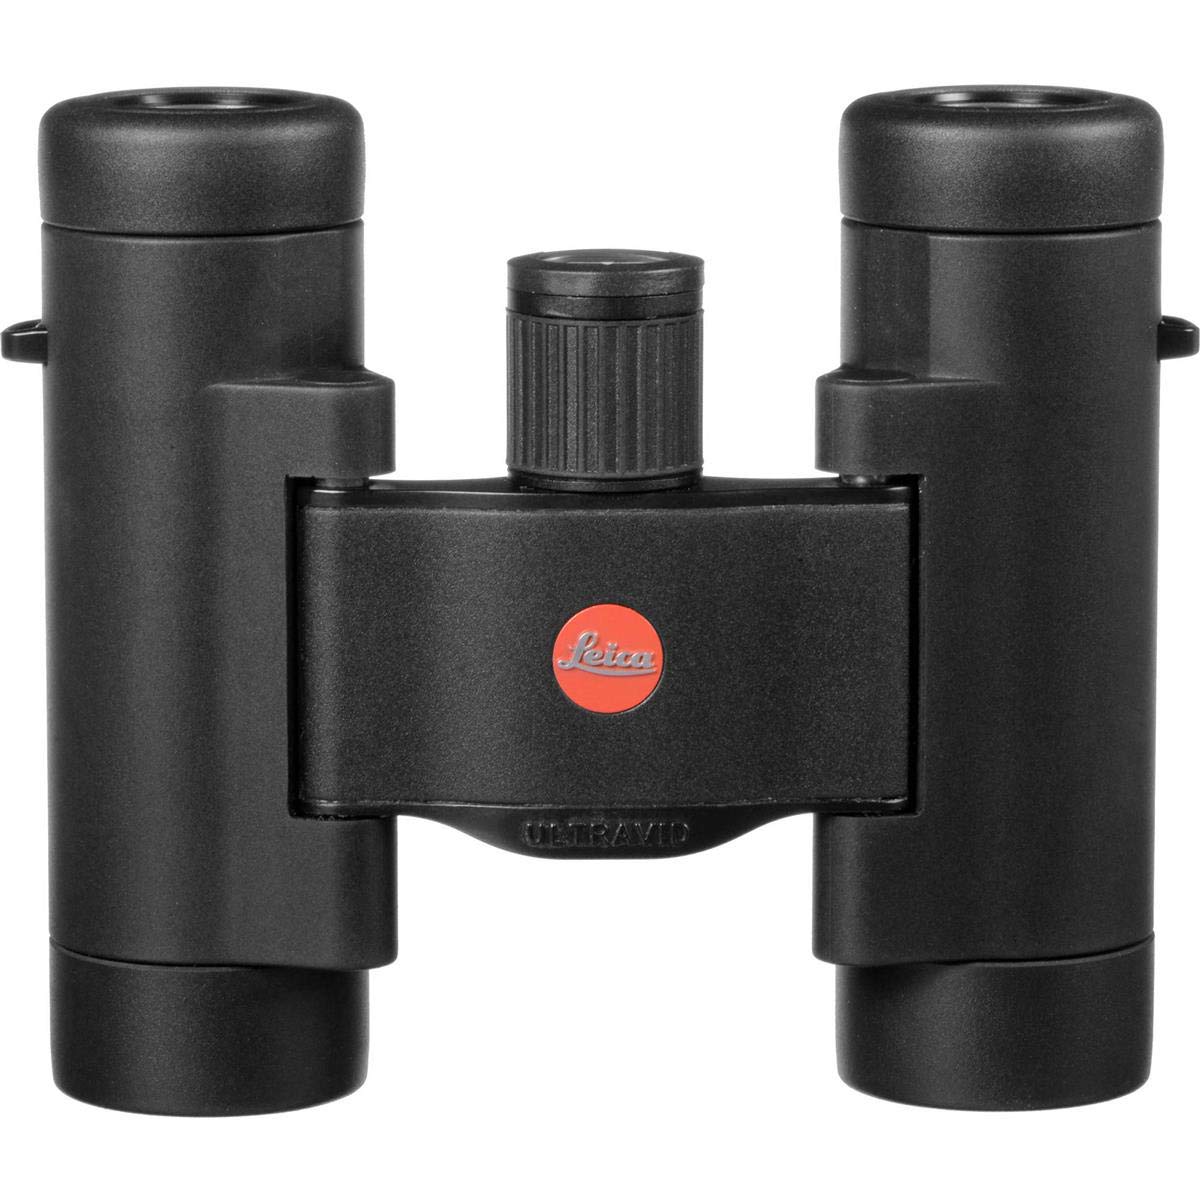 Leica 40252 Ultravid BR Robustes, wasserdichtes Kompaktfernglas mit AquaDura-Beschichtung, 8 x 20, Schwarz